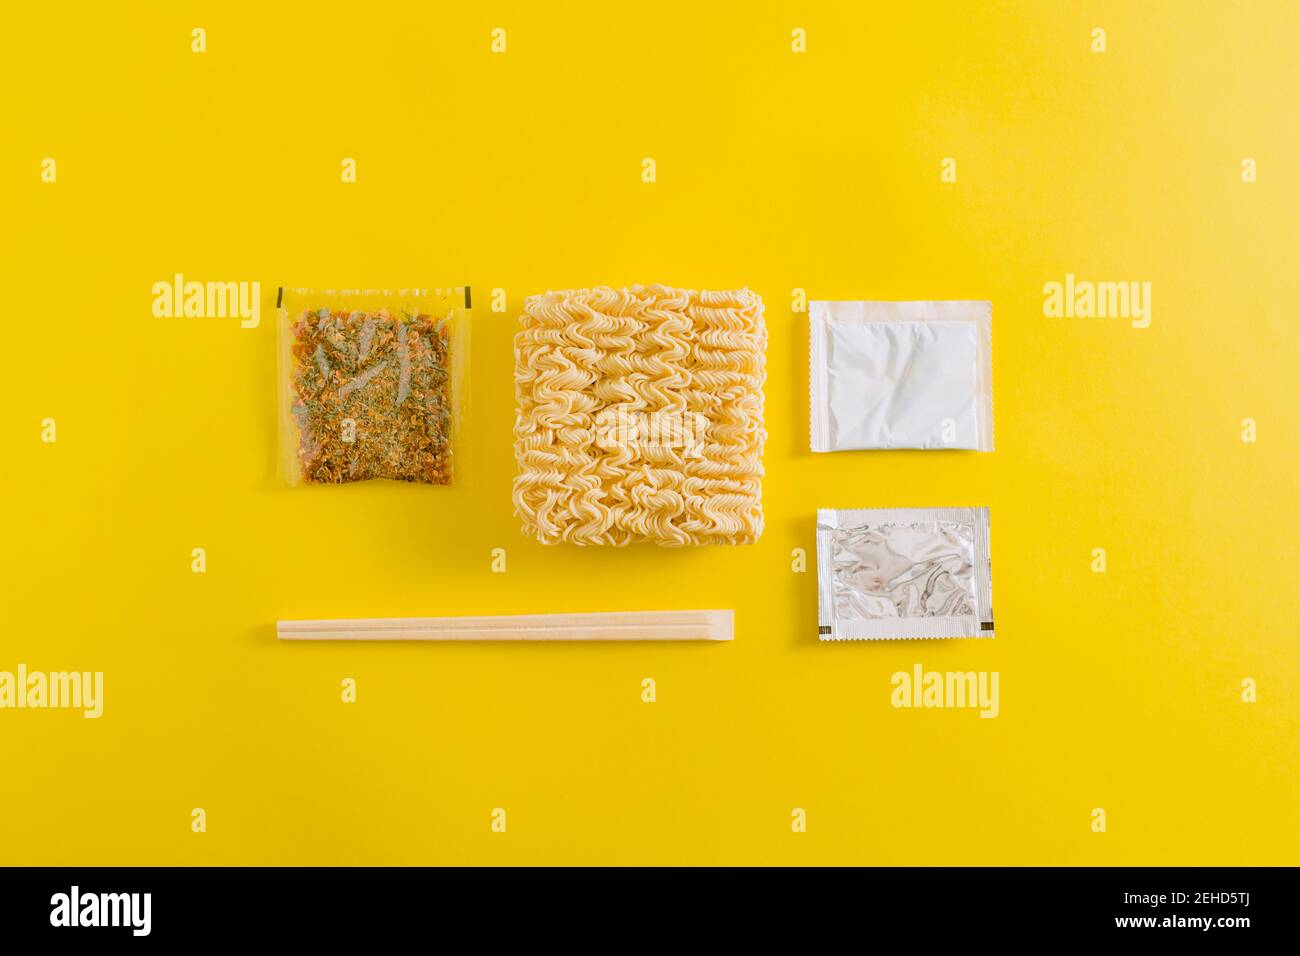 Draufsicht Layout von ungekochten Nudeln mit Gewürzen Zutaten und Klebt in Plastikverpackungen auf gelbem Hintergrund Stockfoto